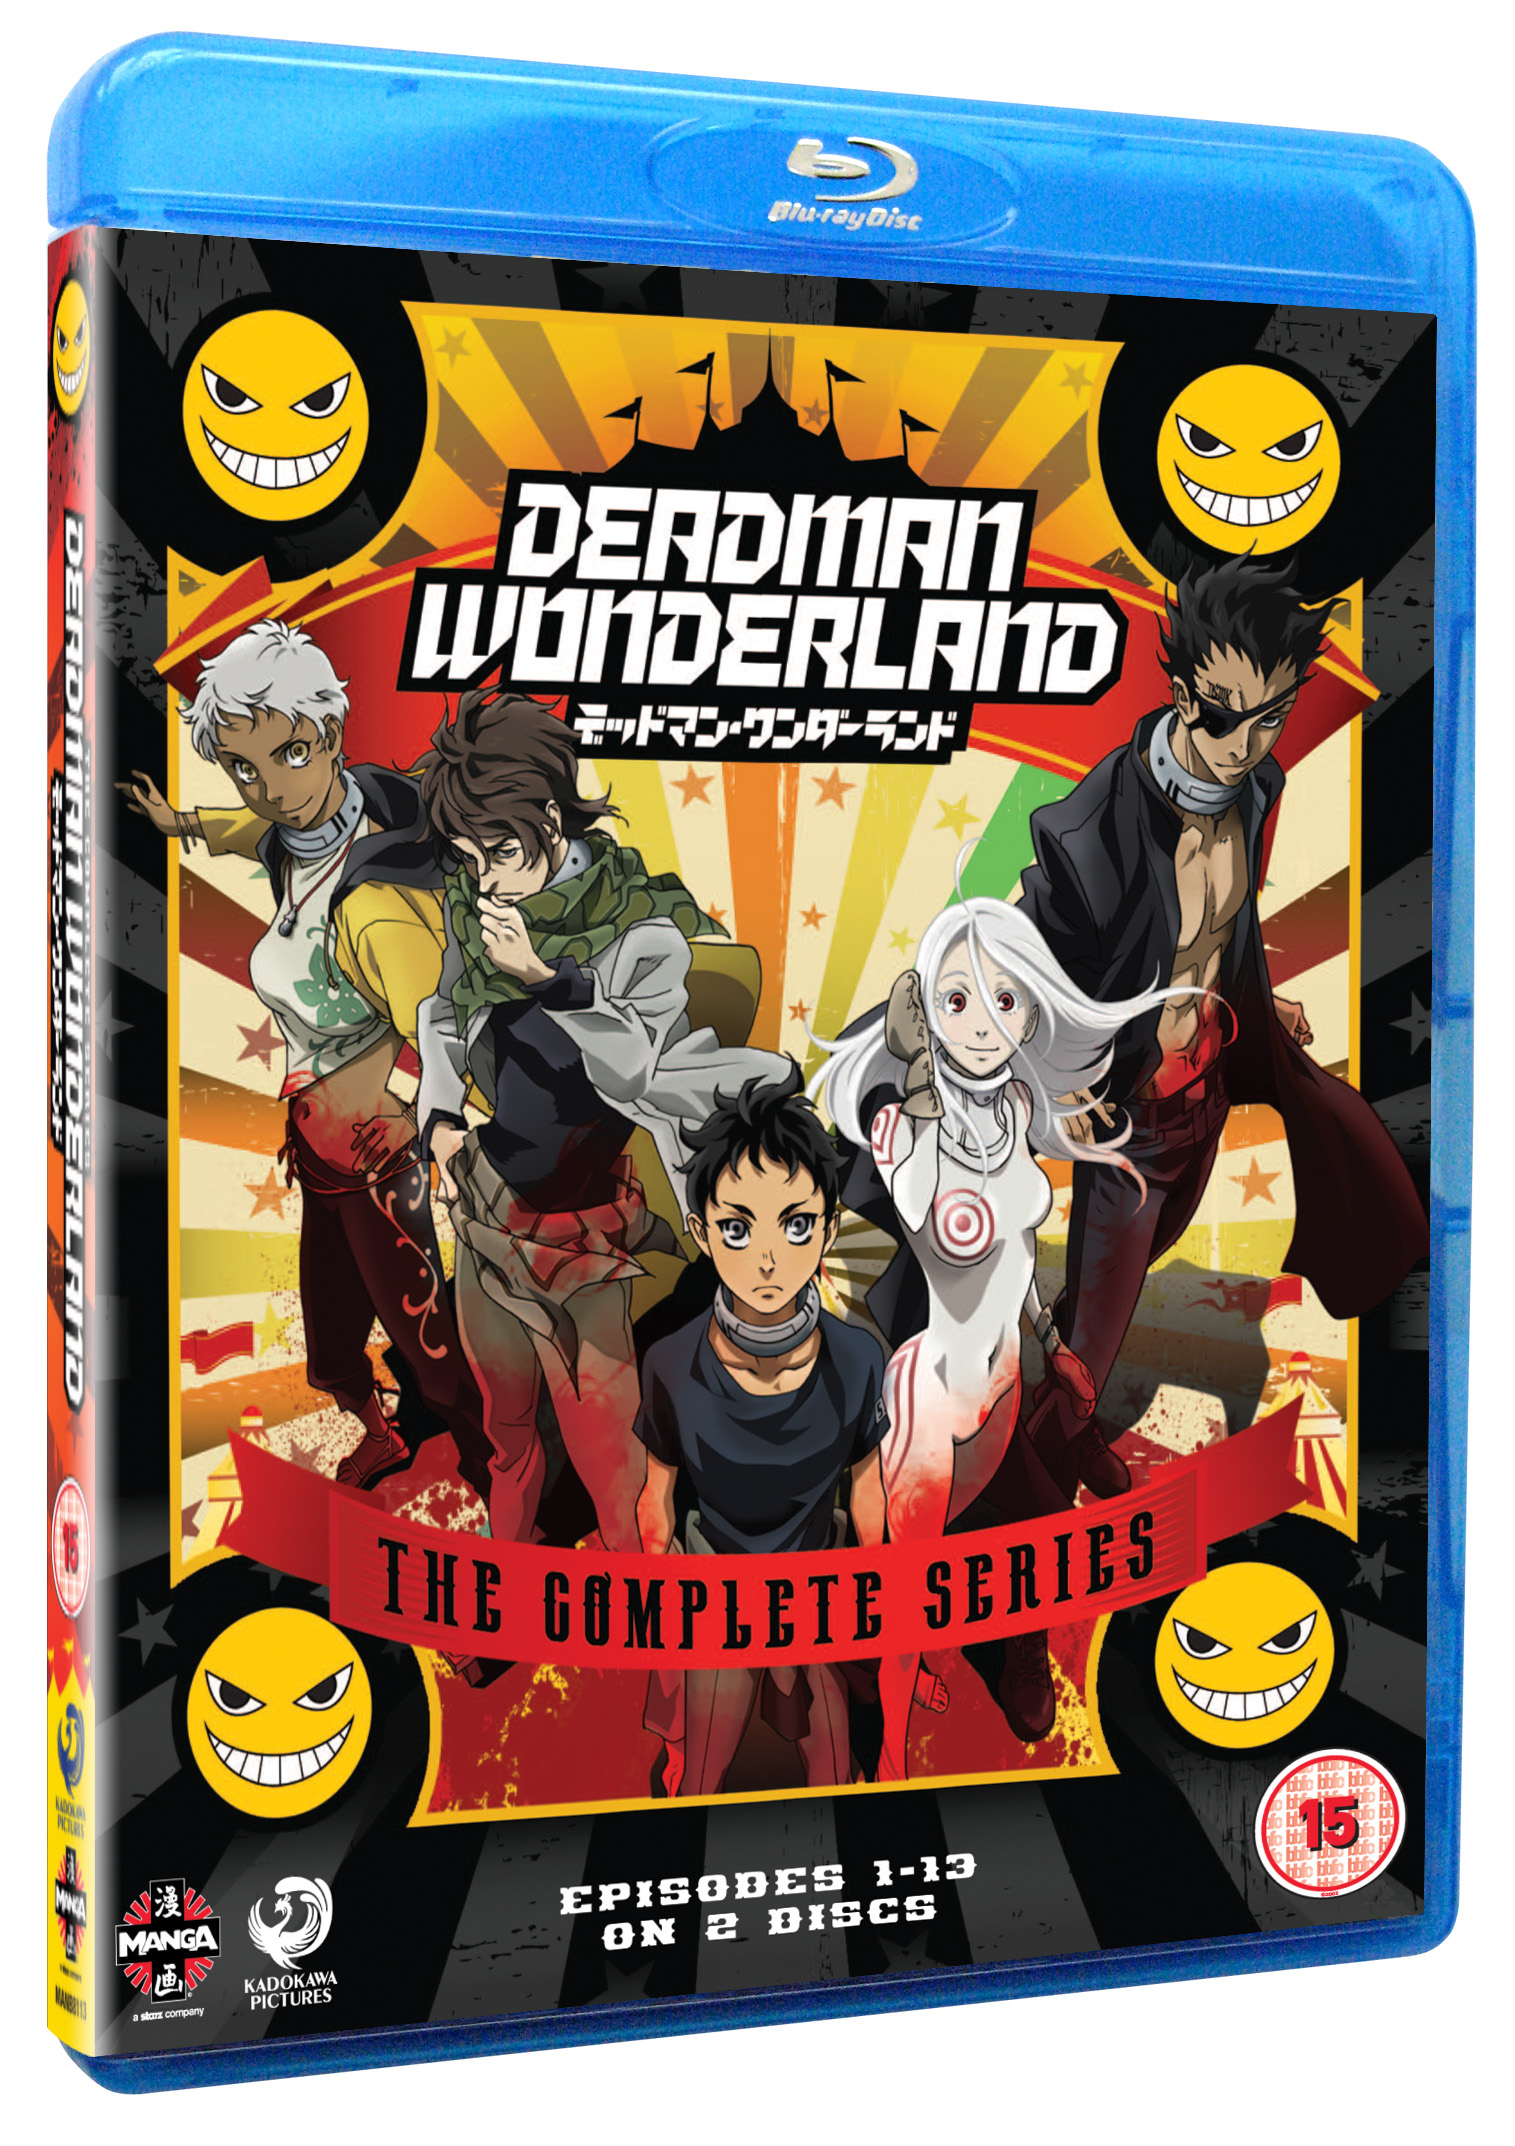 Deadman Wonderland The Complete Series - Fetch Publicity